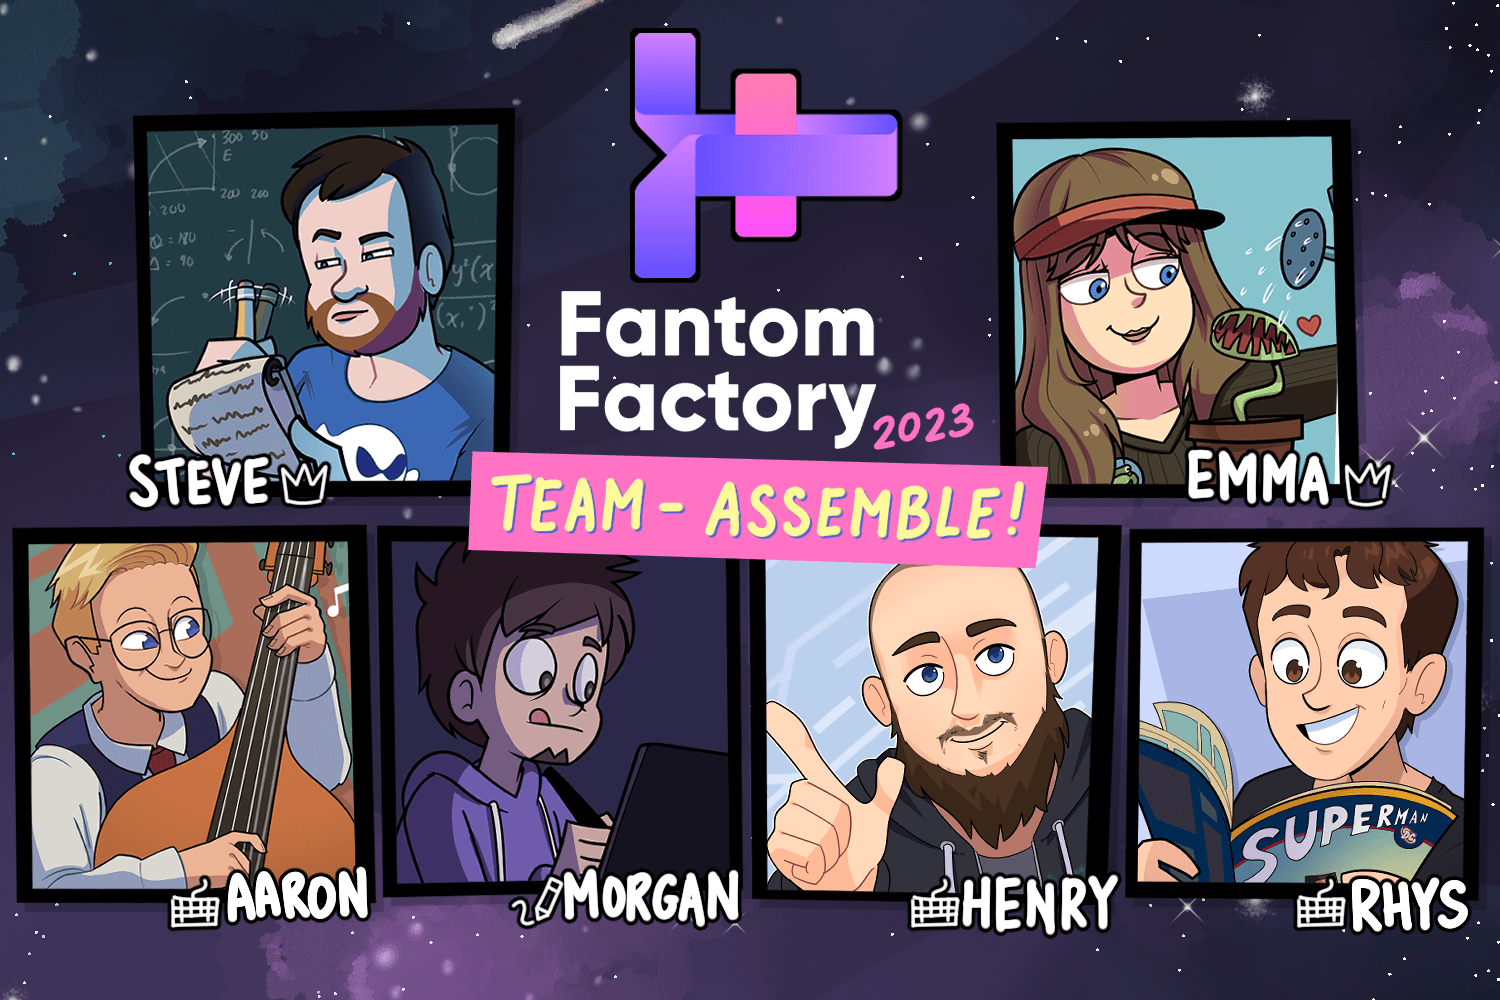 The Fantom Factory Team